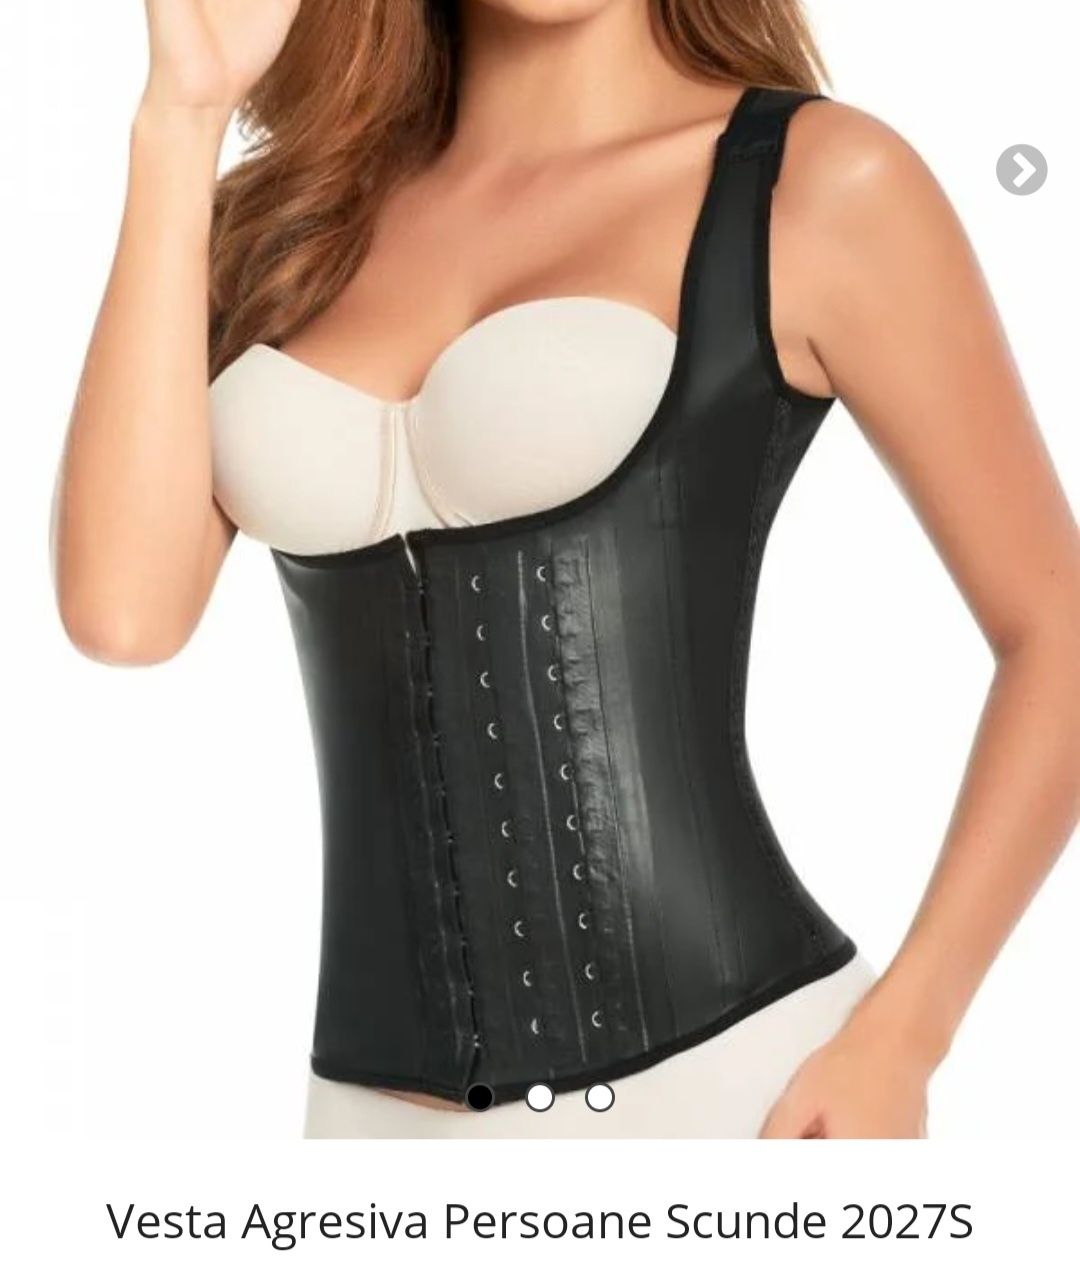 Vesta Clessidra corset premium marime s/m